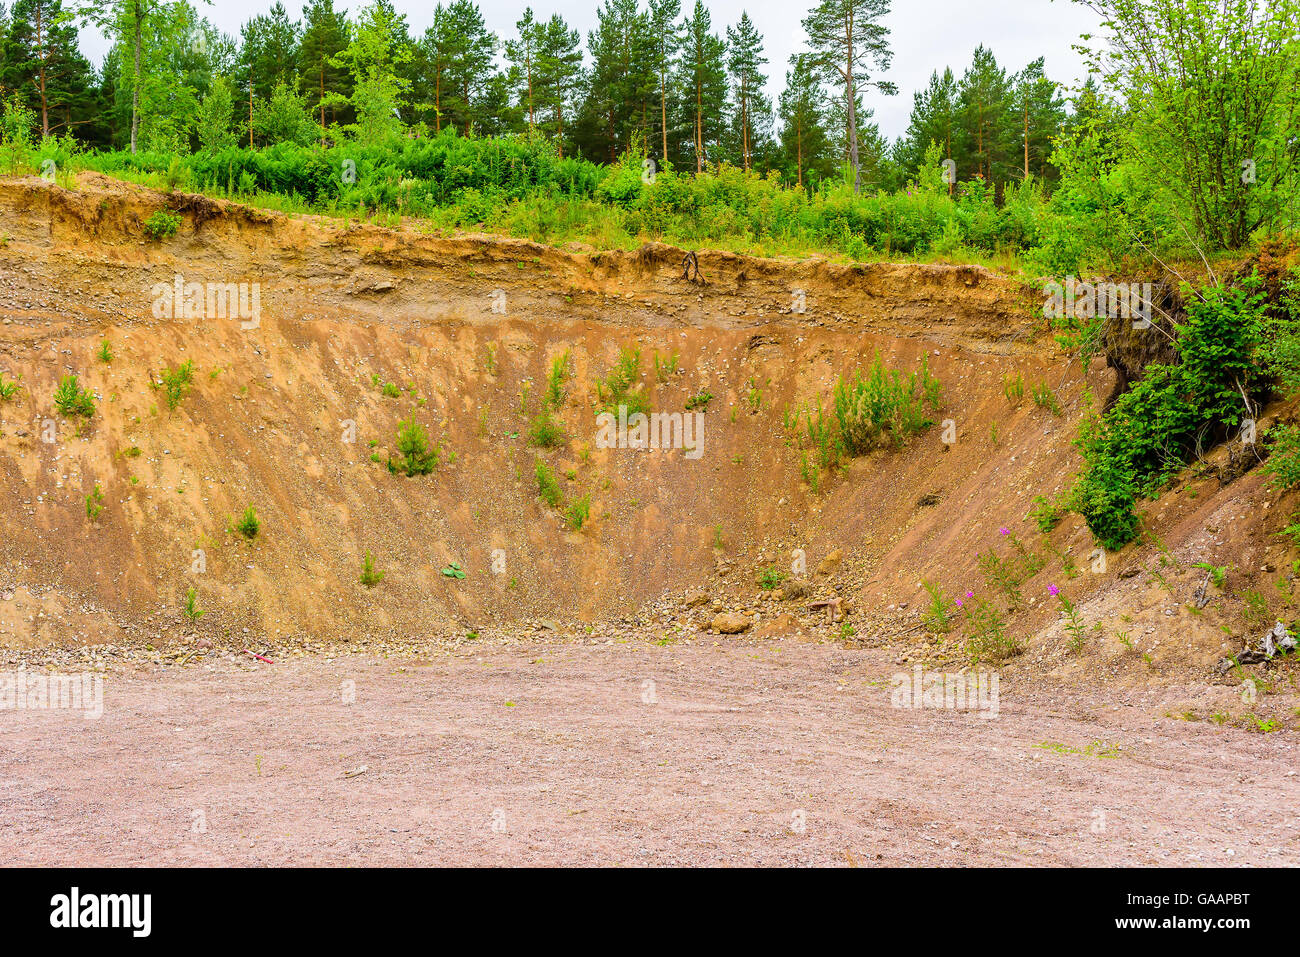 Wand der Aushöhlung Boden in einer Kiesgrube oder Steinbruch in der Natur. Der Boden ist nach einem kurzen Regen leicht feucht. Stockfoto